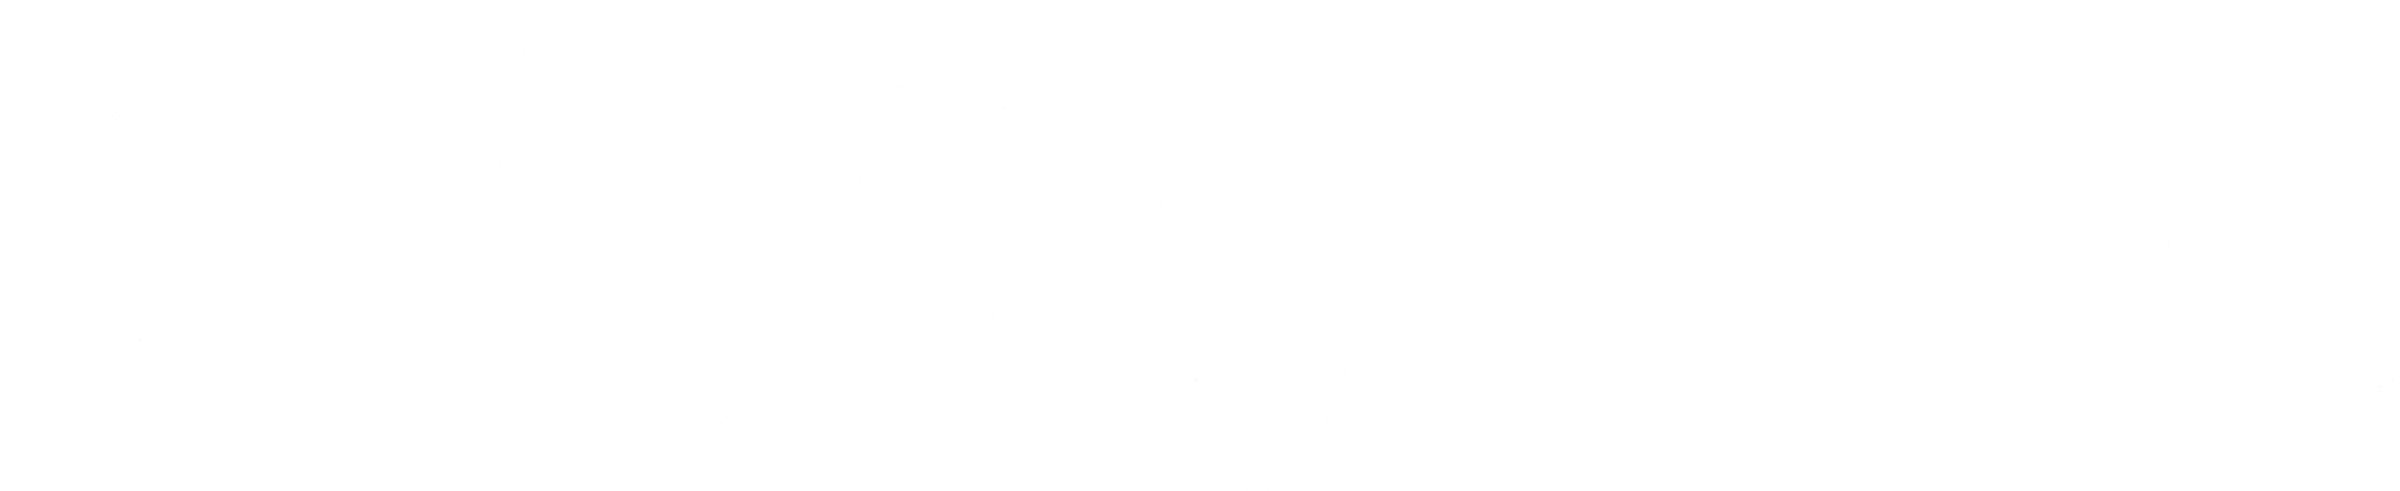 SkyDrive Logo - Skydrive Logo PNG Transparent & SVG Vector - Freebie Supply